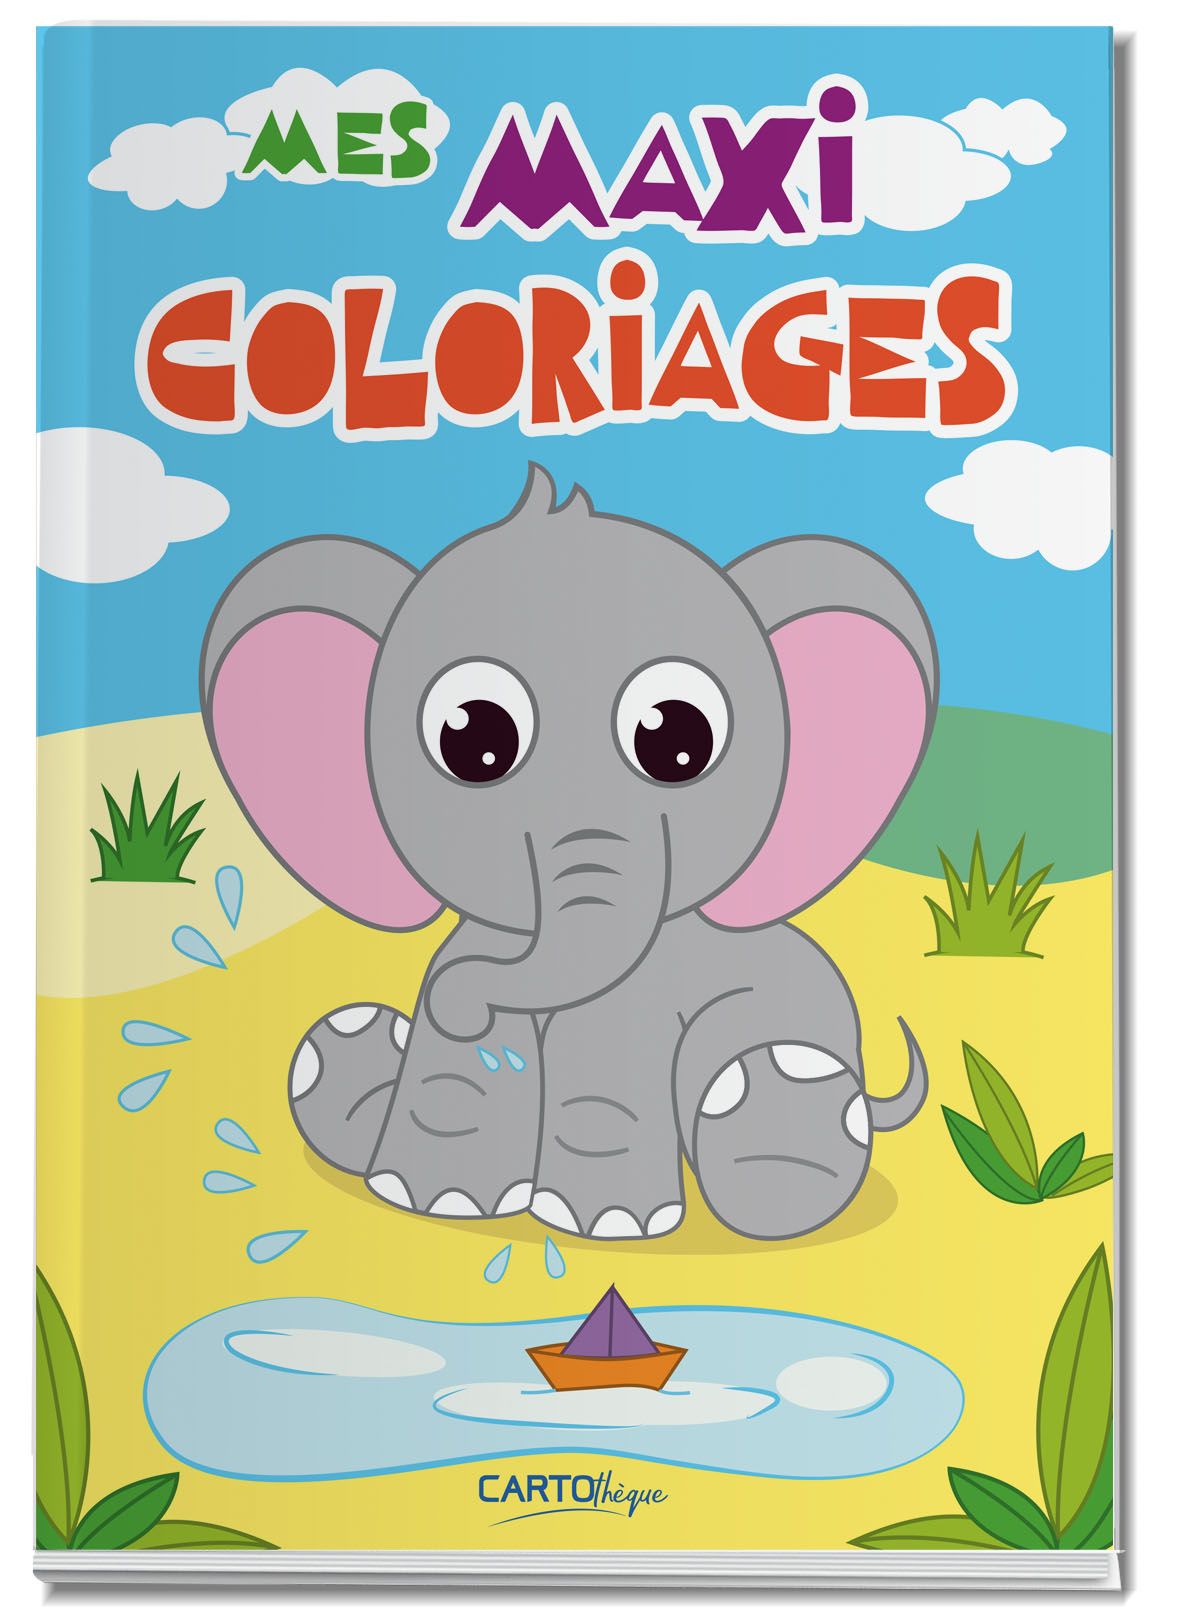 Mon gros livre de coloriage - Eléphant (3-5 ans) Pas Cher